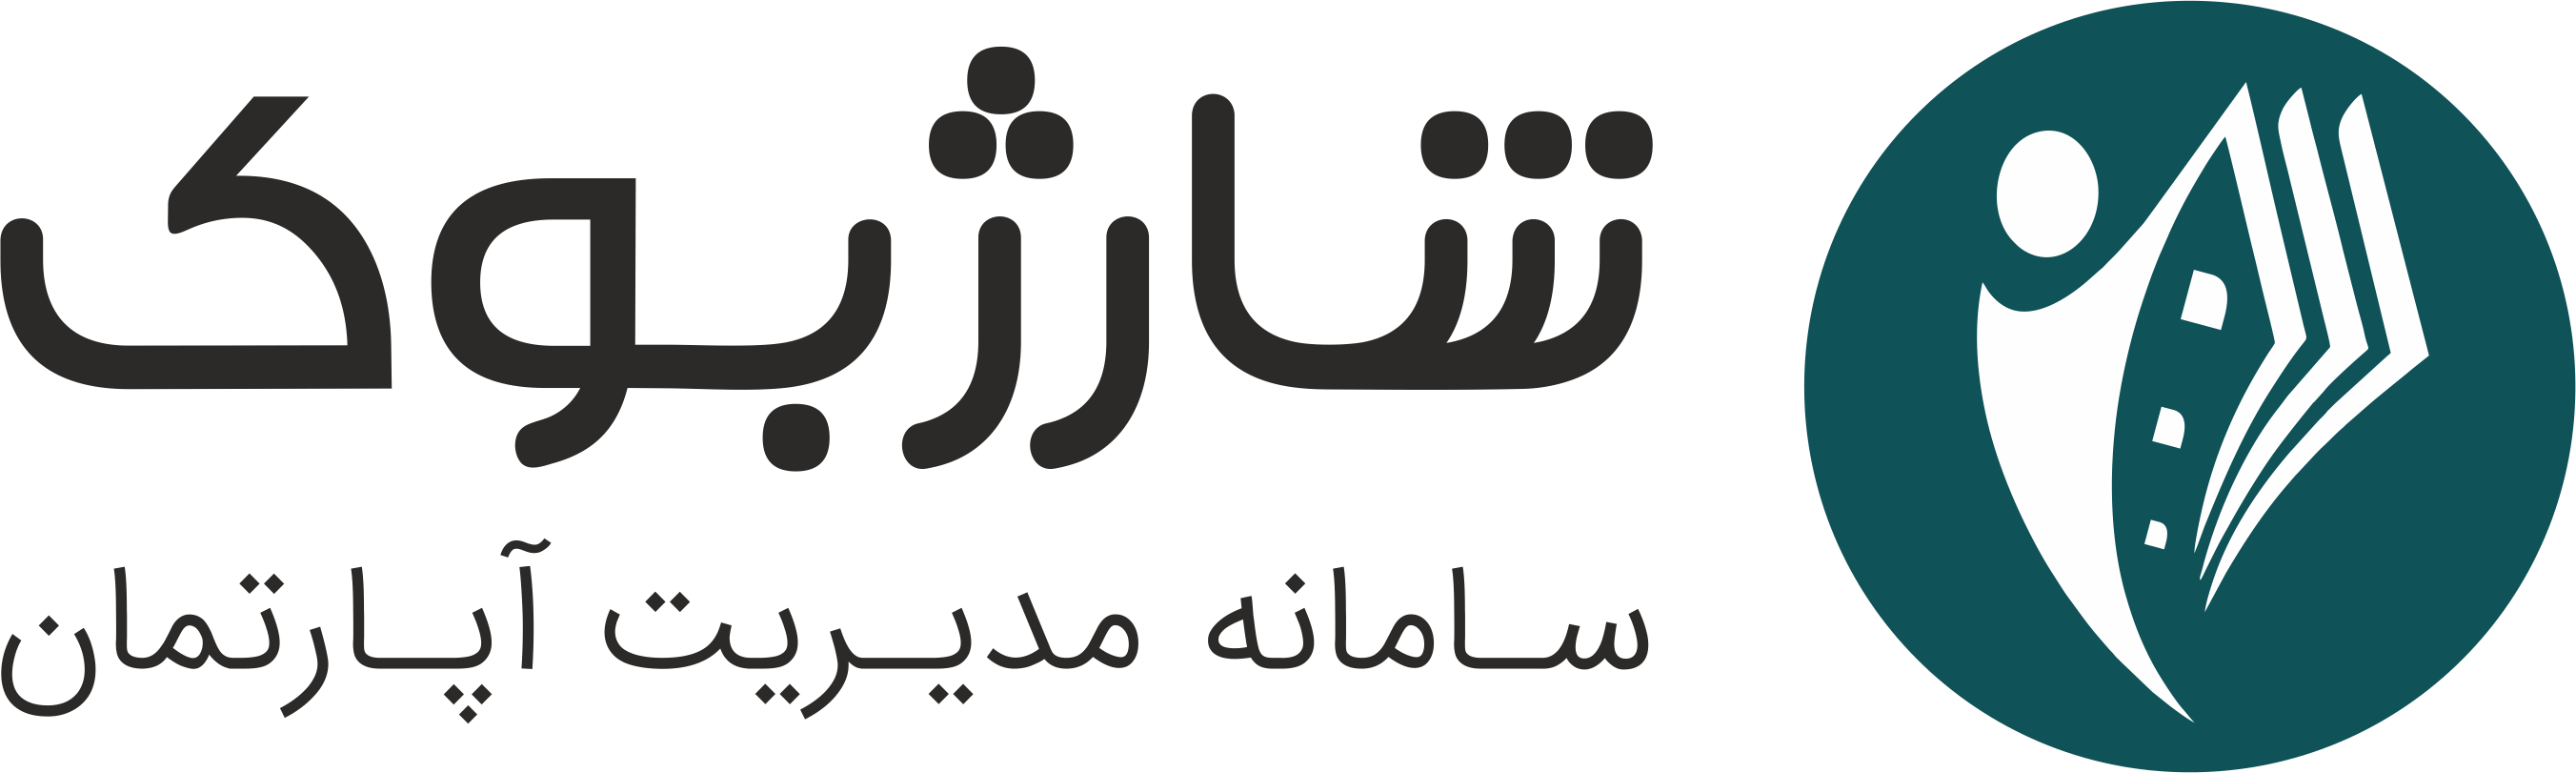 Sharj Book Logo